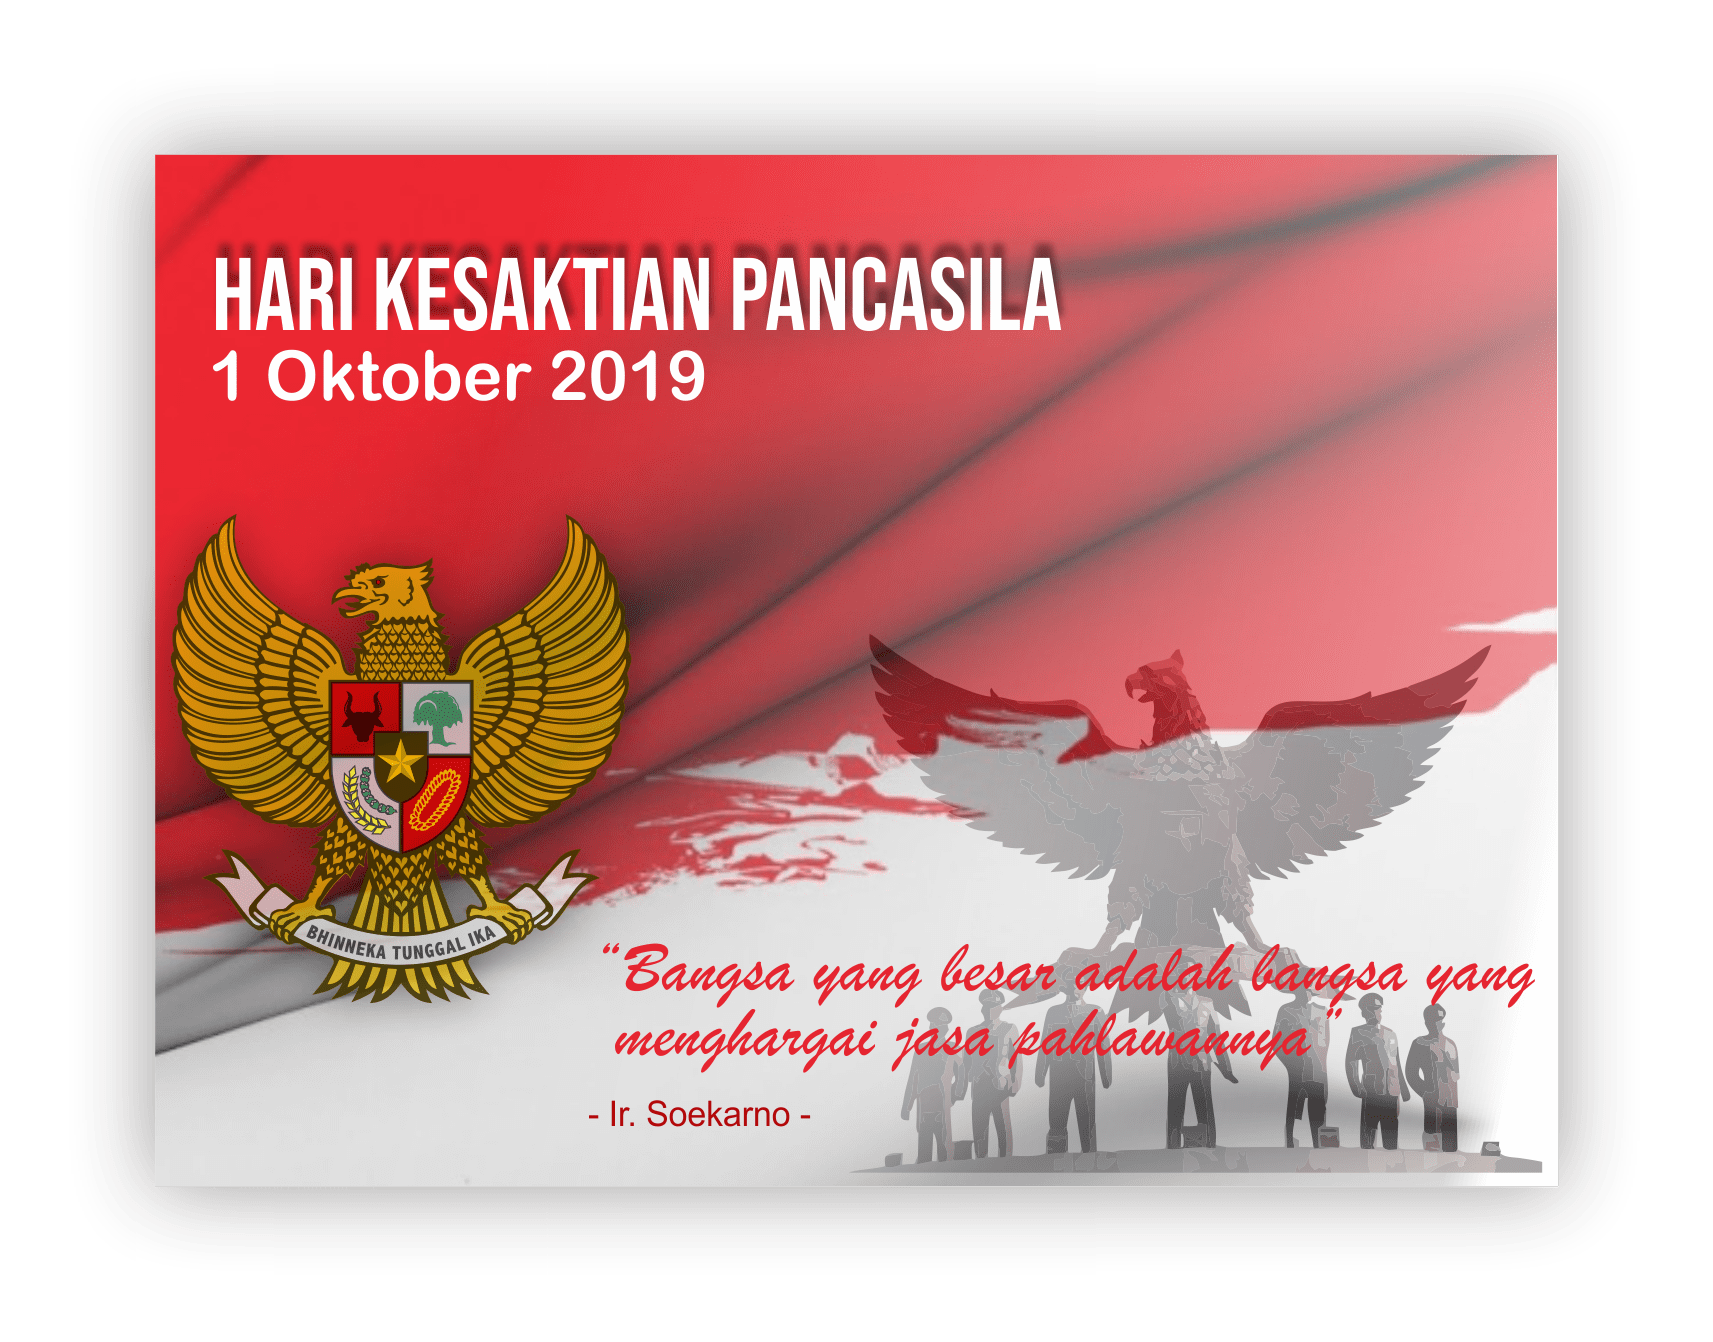 Hari Kesaktian Pancasila 2019 Ilham Id